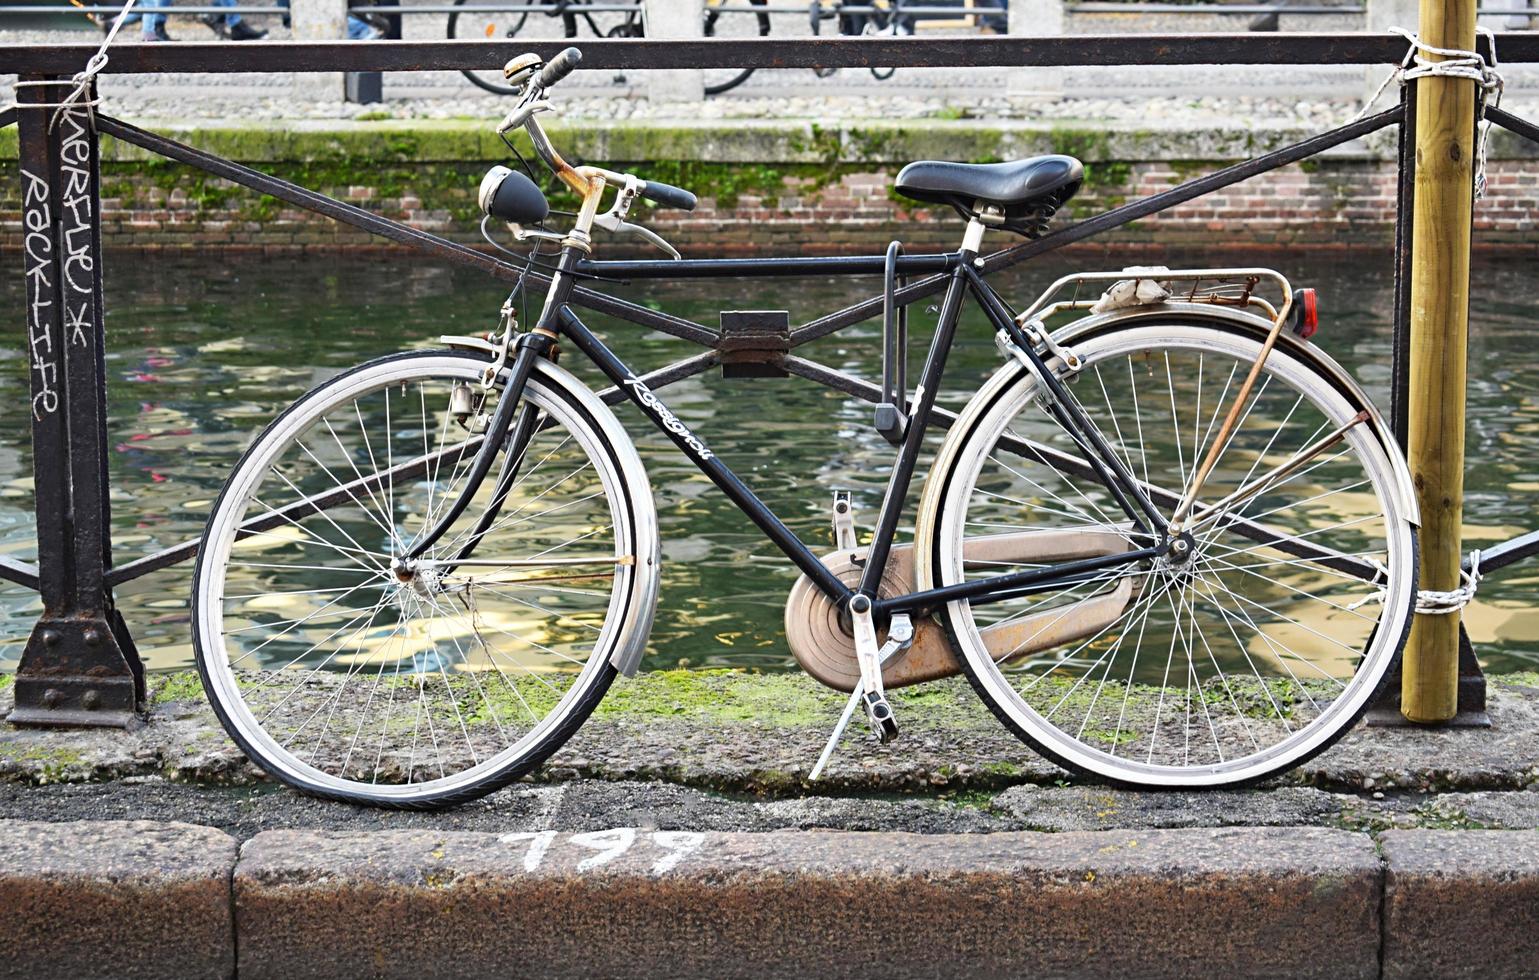 bicicleta cruiser preta e cinza em fotografia de foco foto